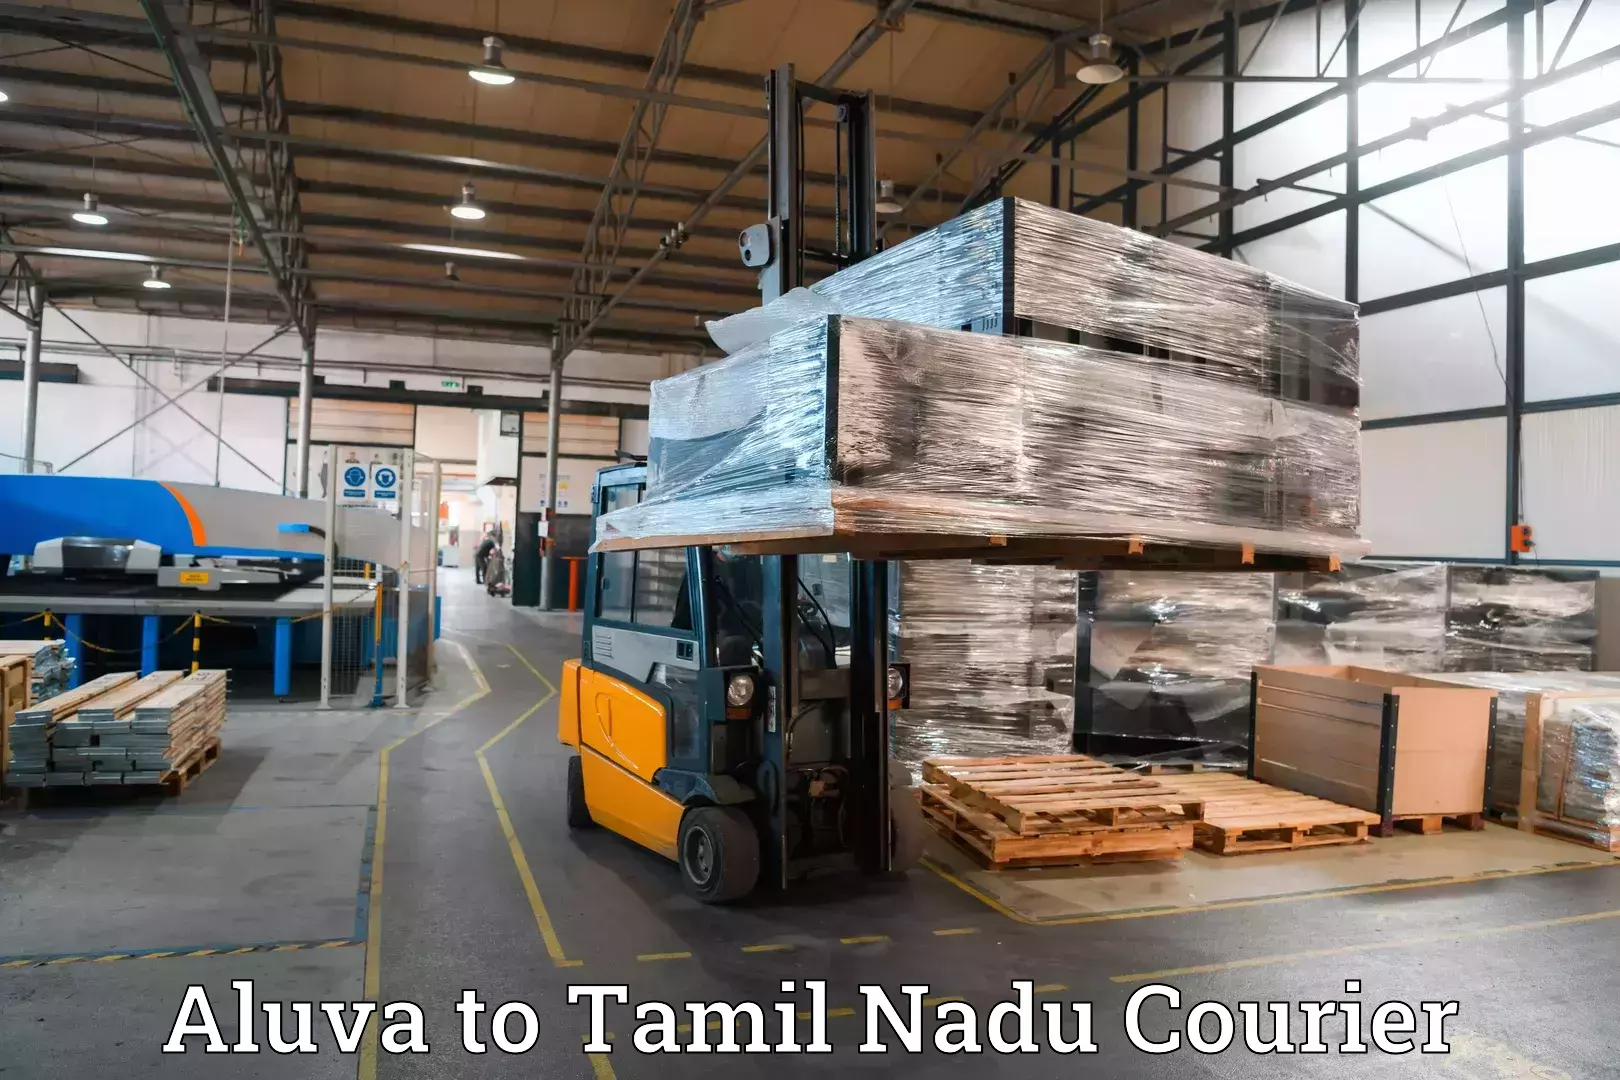 Luggage shipping service Aluva to Thiruthuraipoondi